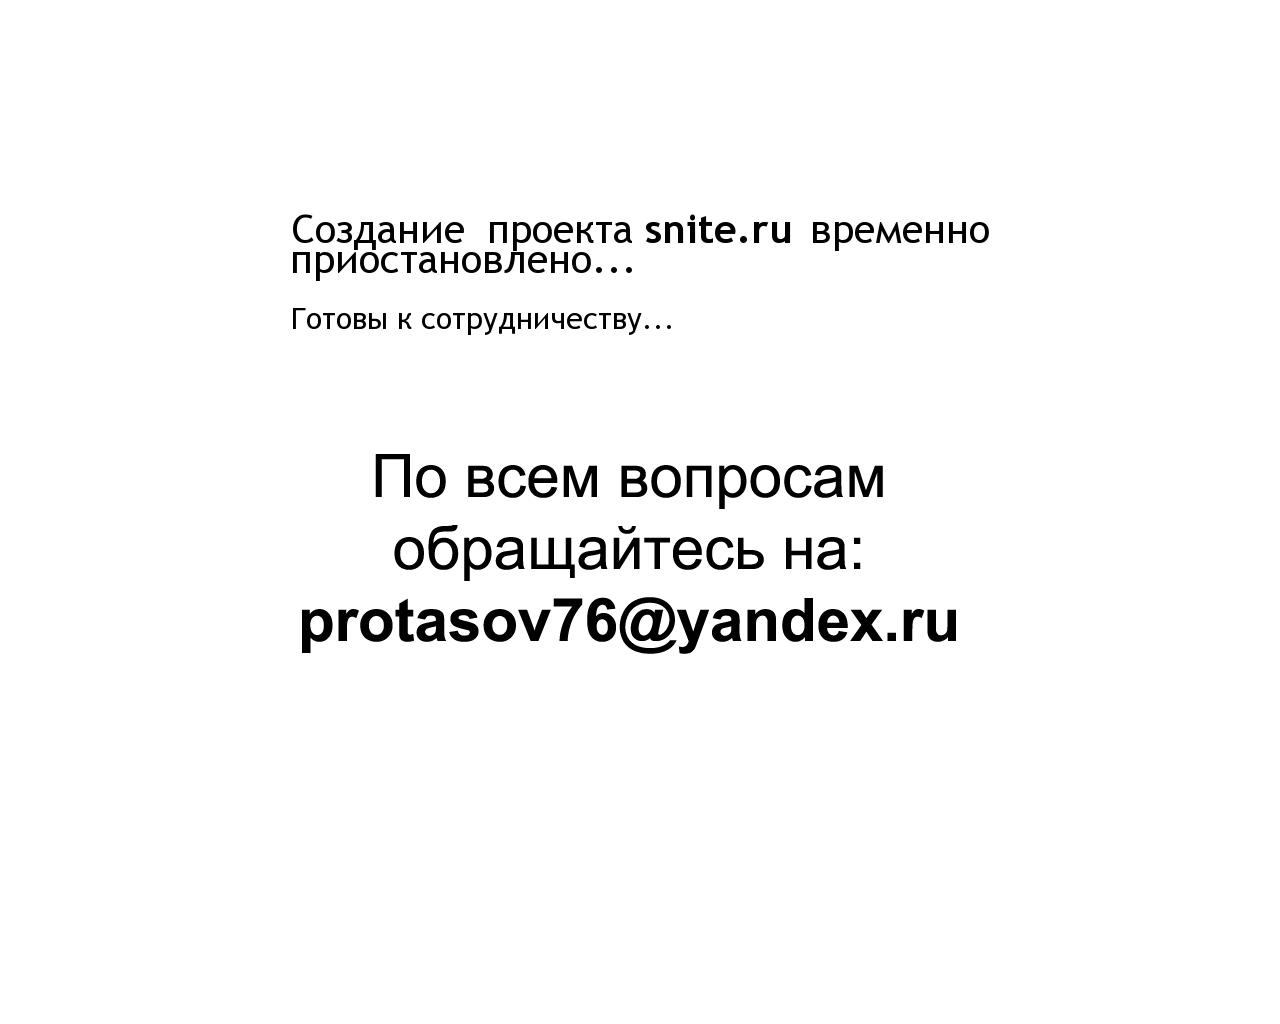 Изображение сайта snite.ru в разрешении 1280x1024